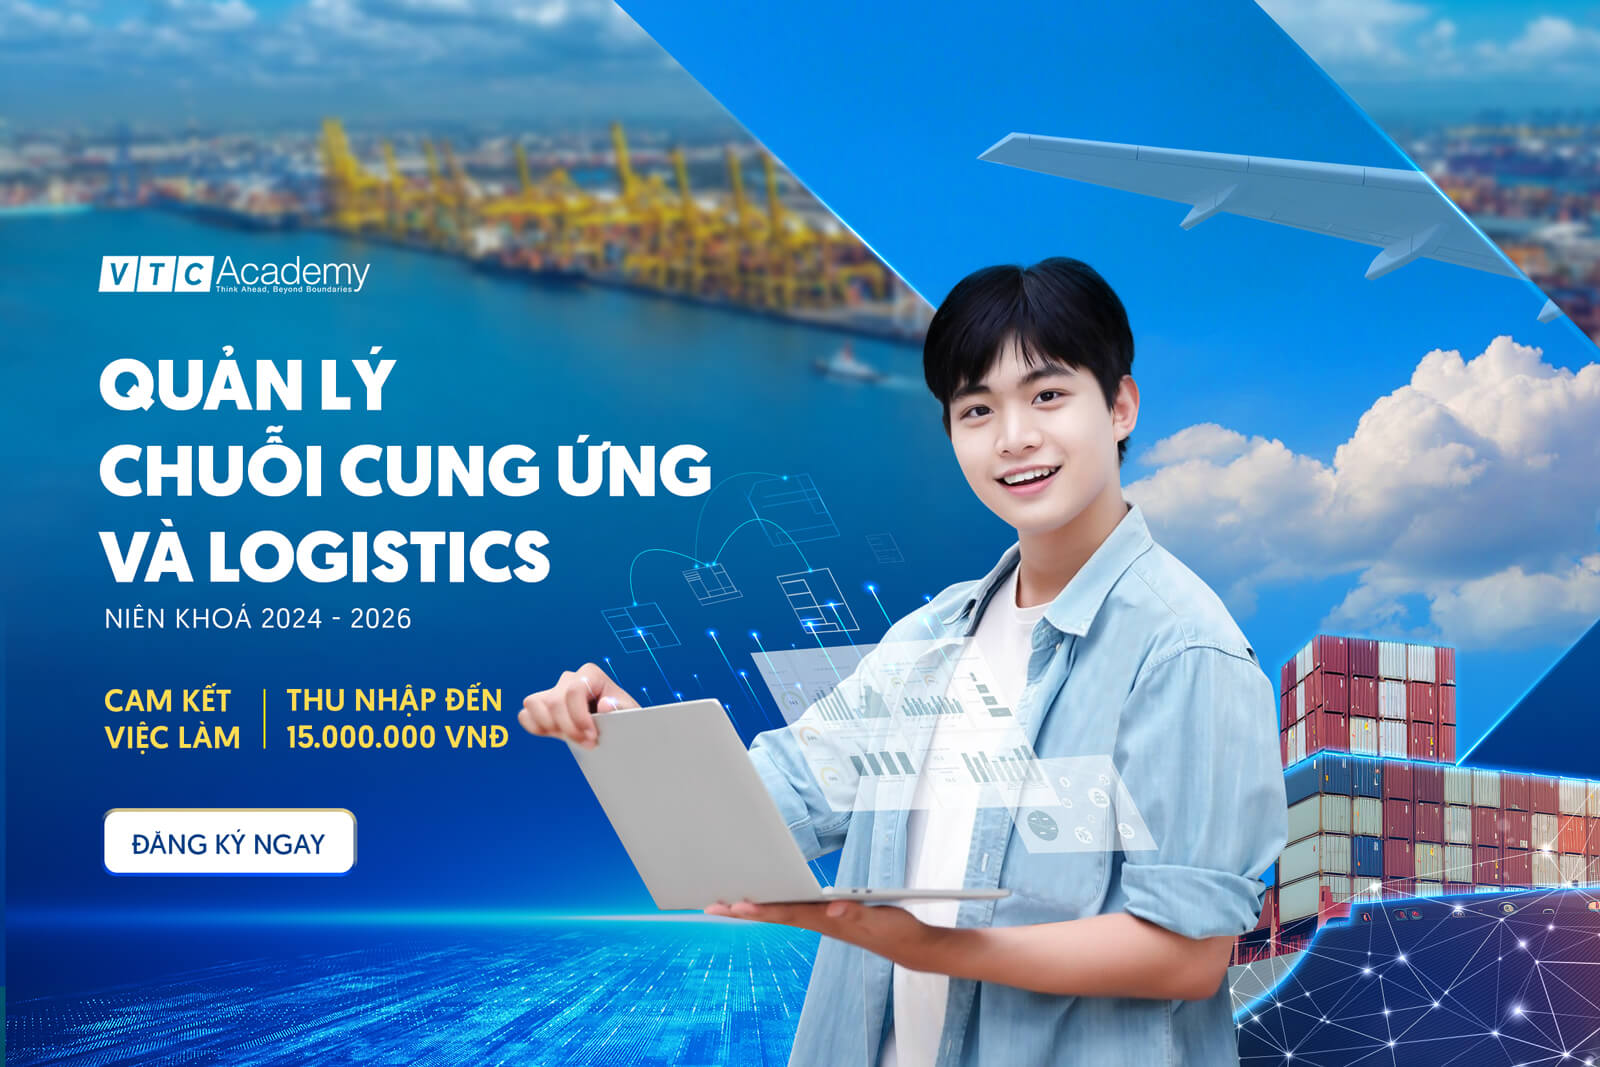 VTC Academy chính thức ra mắt ngành học mới - Quản lý chuỗi cung ứng và Logistics